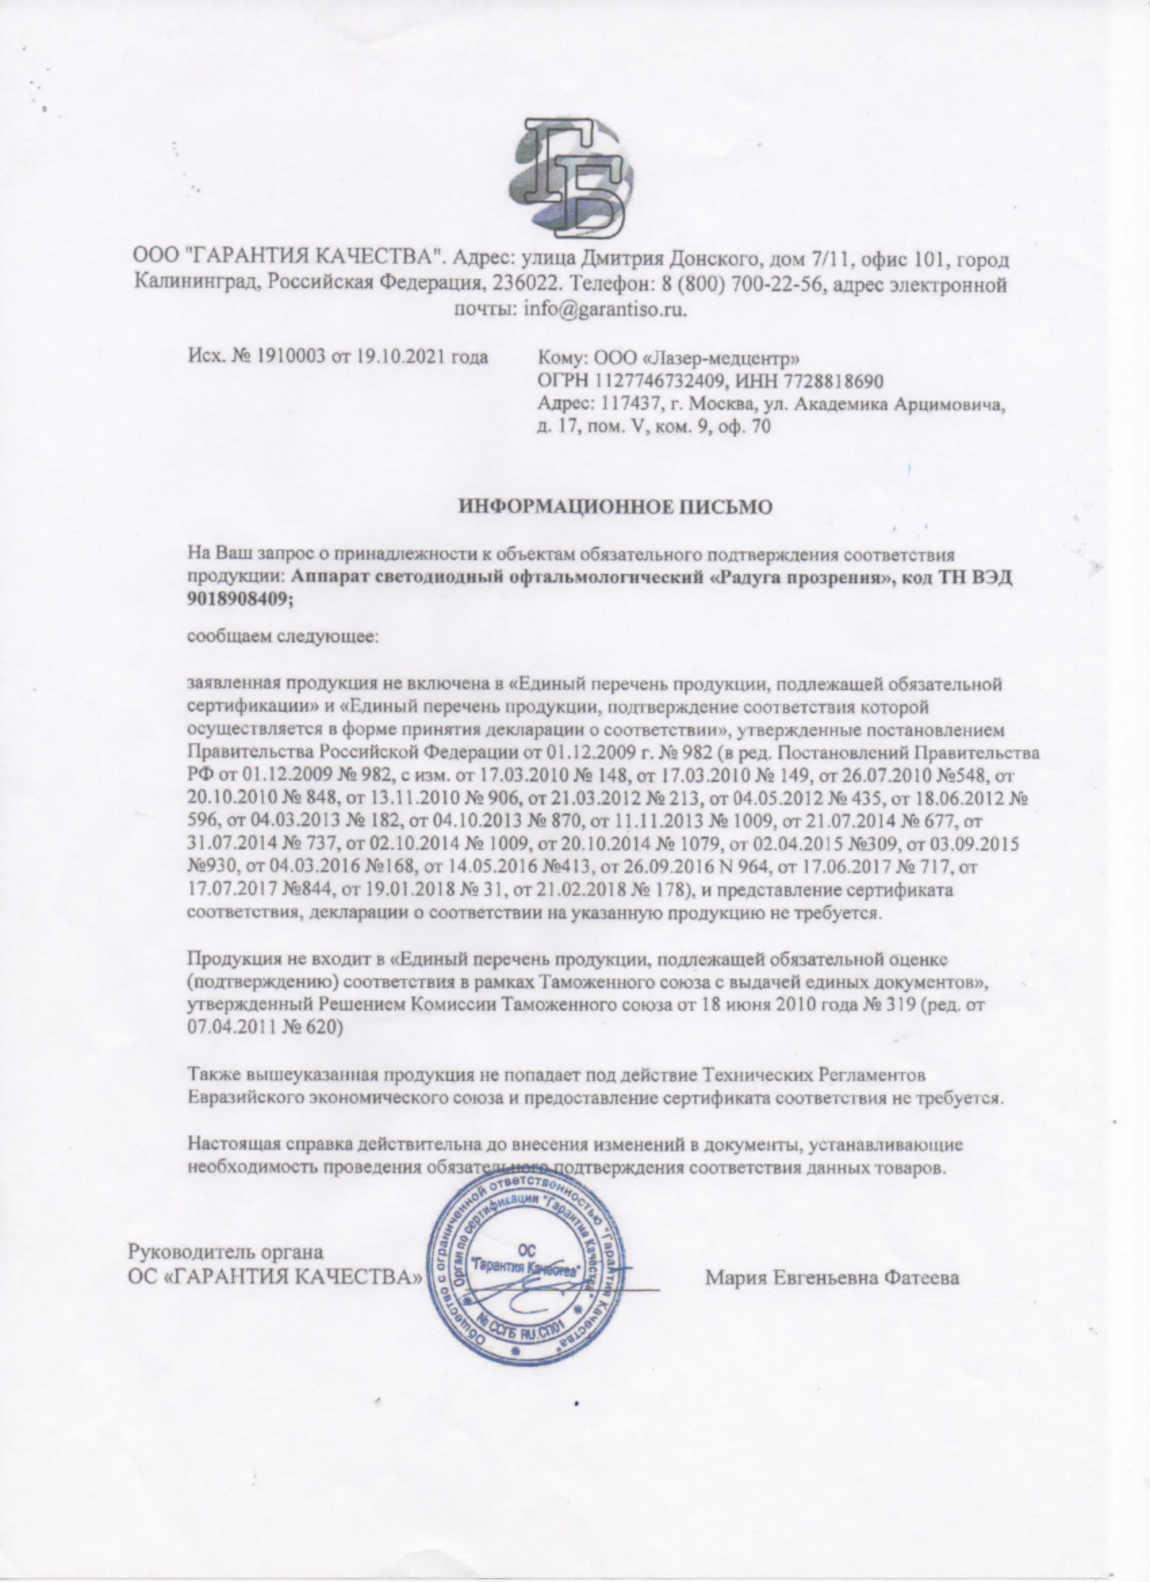 Информационное письмо о сертификации очков Панкова (Радуга Прозрения)